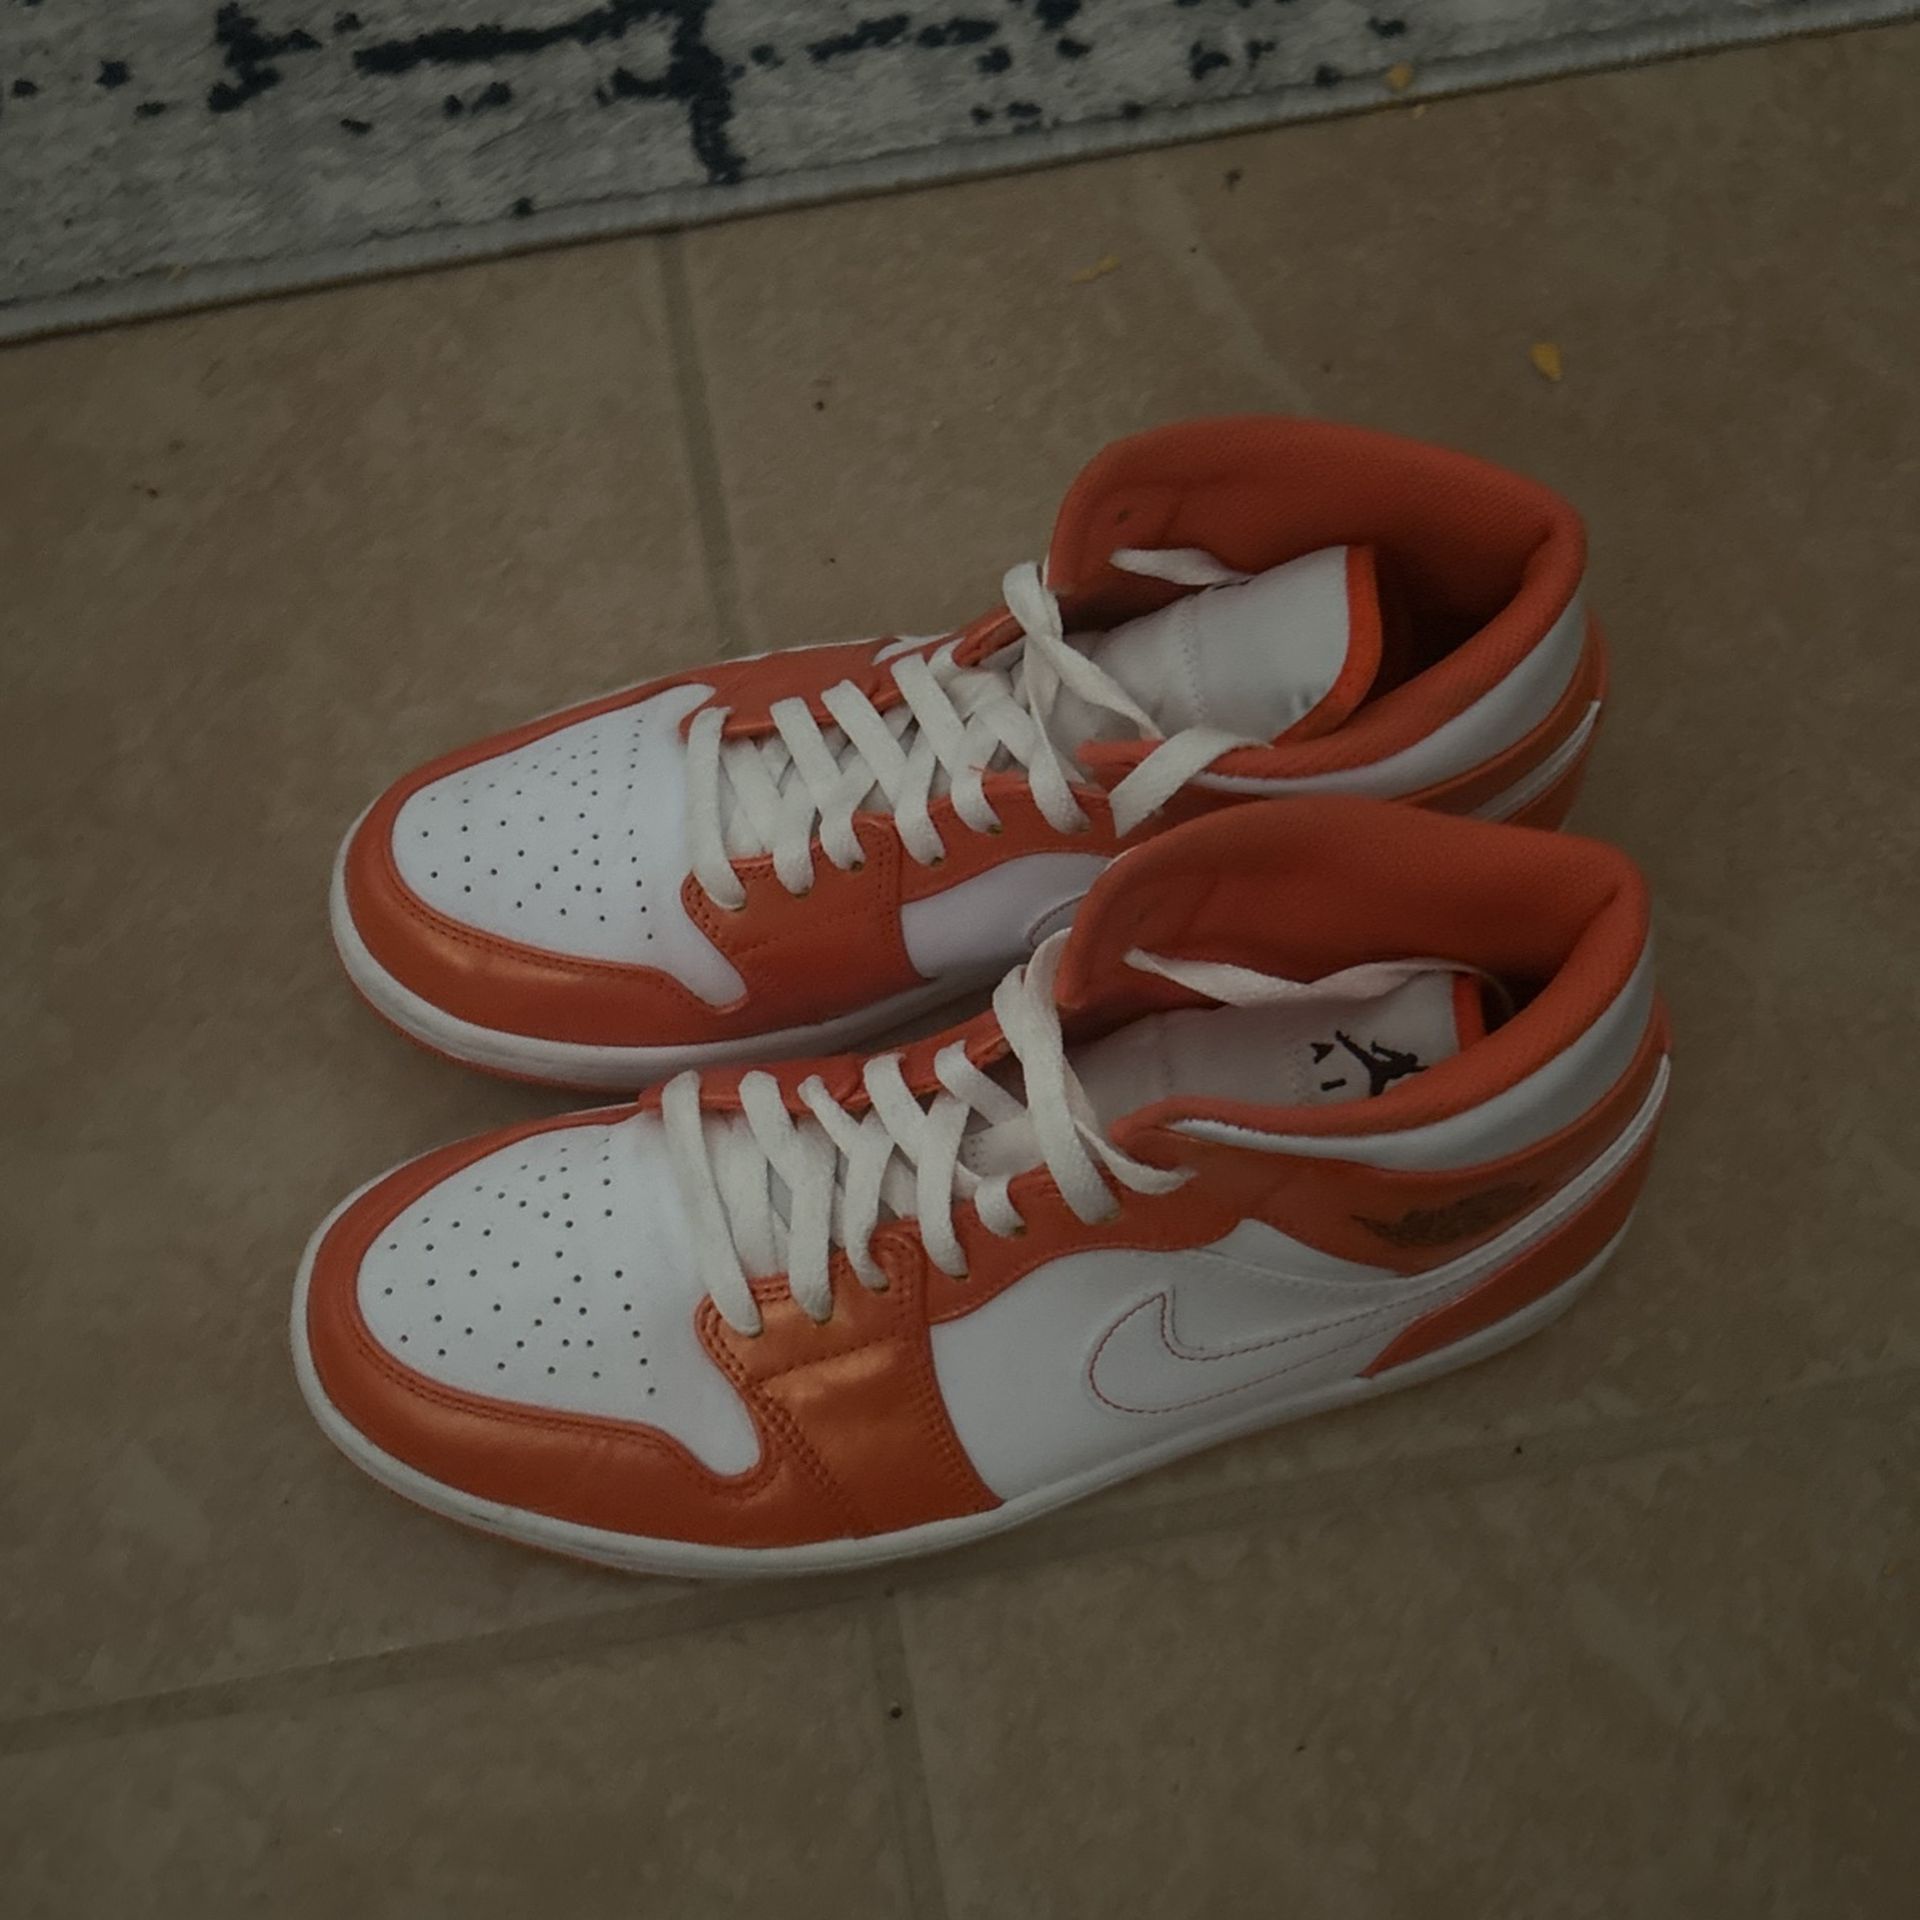 Jordan 1 Orange 